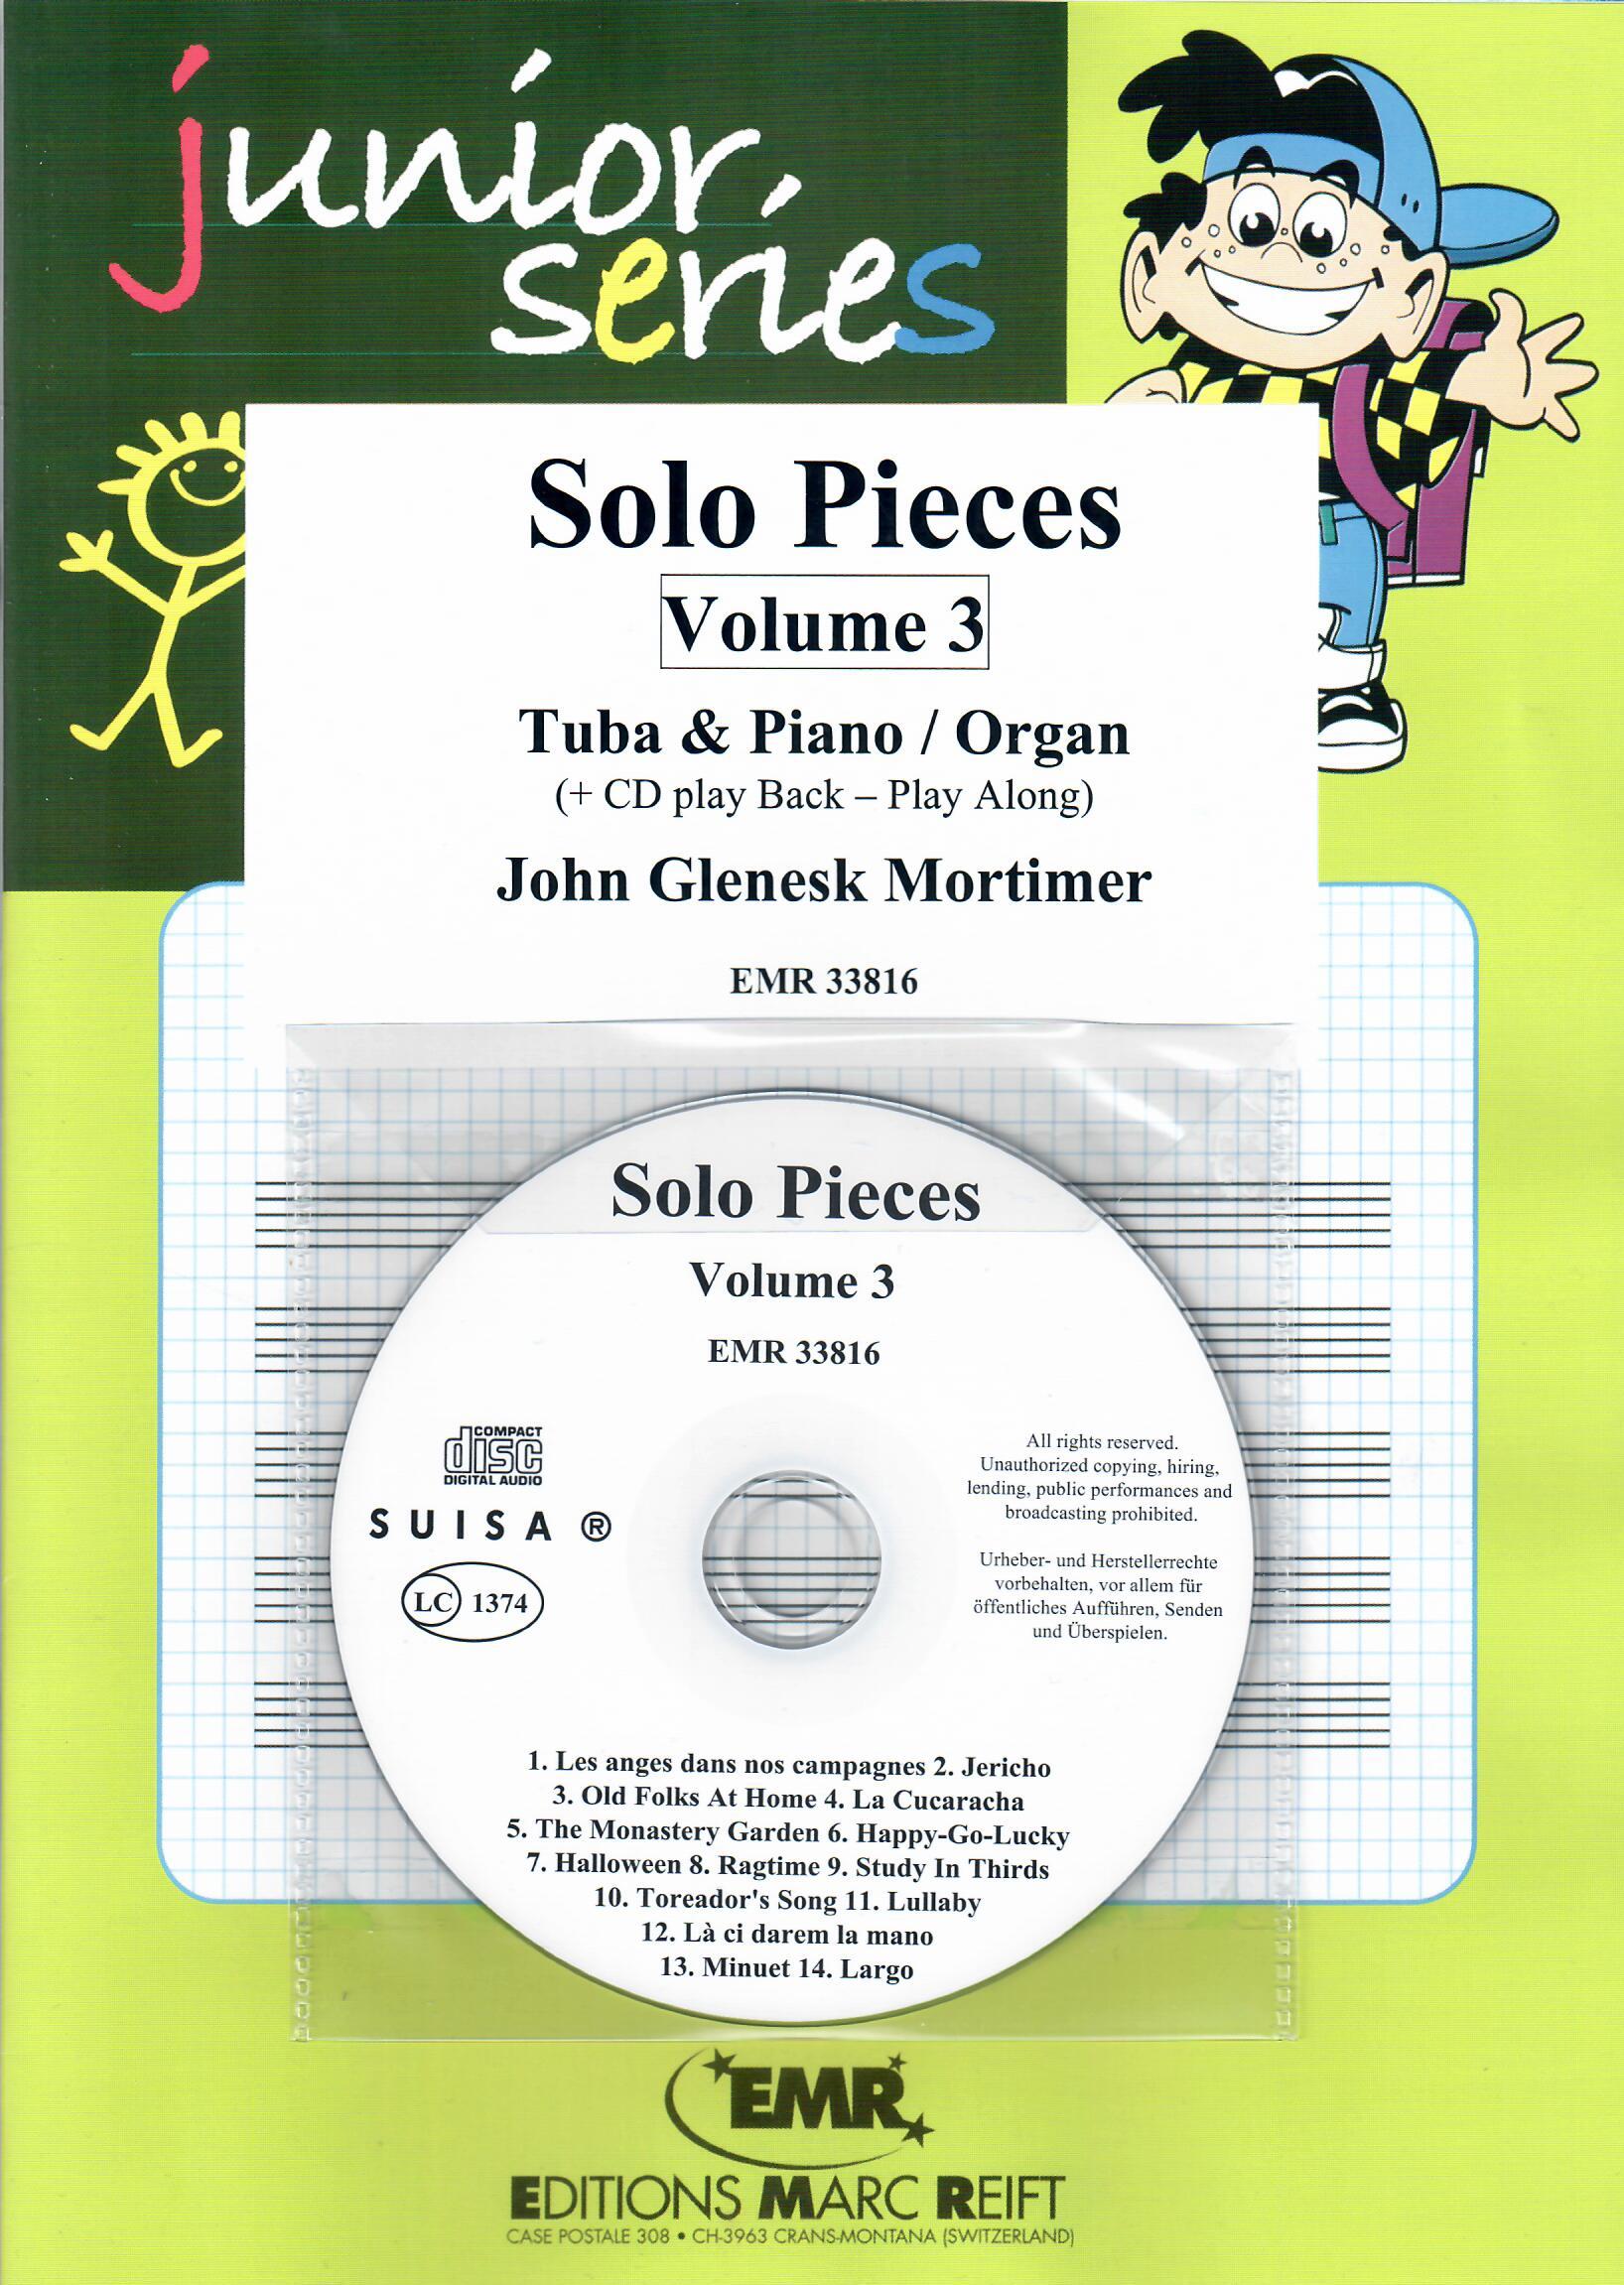 SOLO PIECES VOL. 3, SOLOS - E♭. Bass